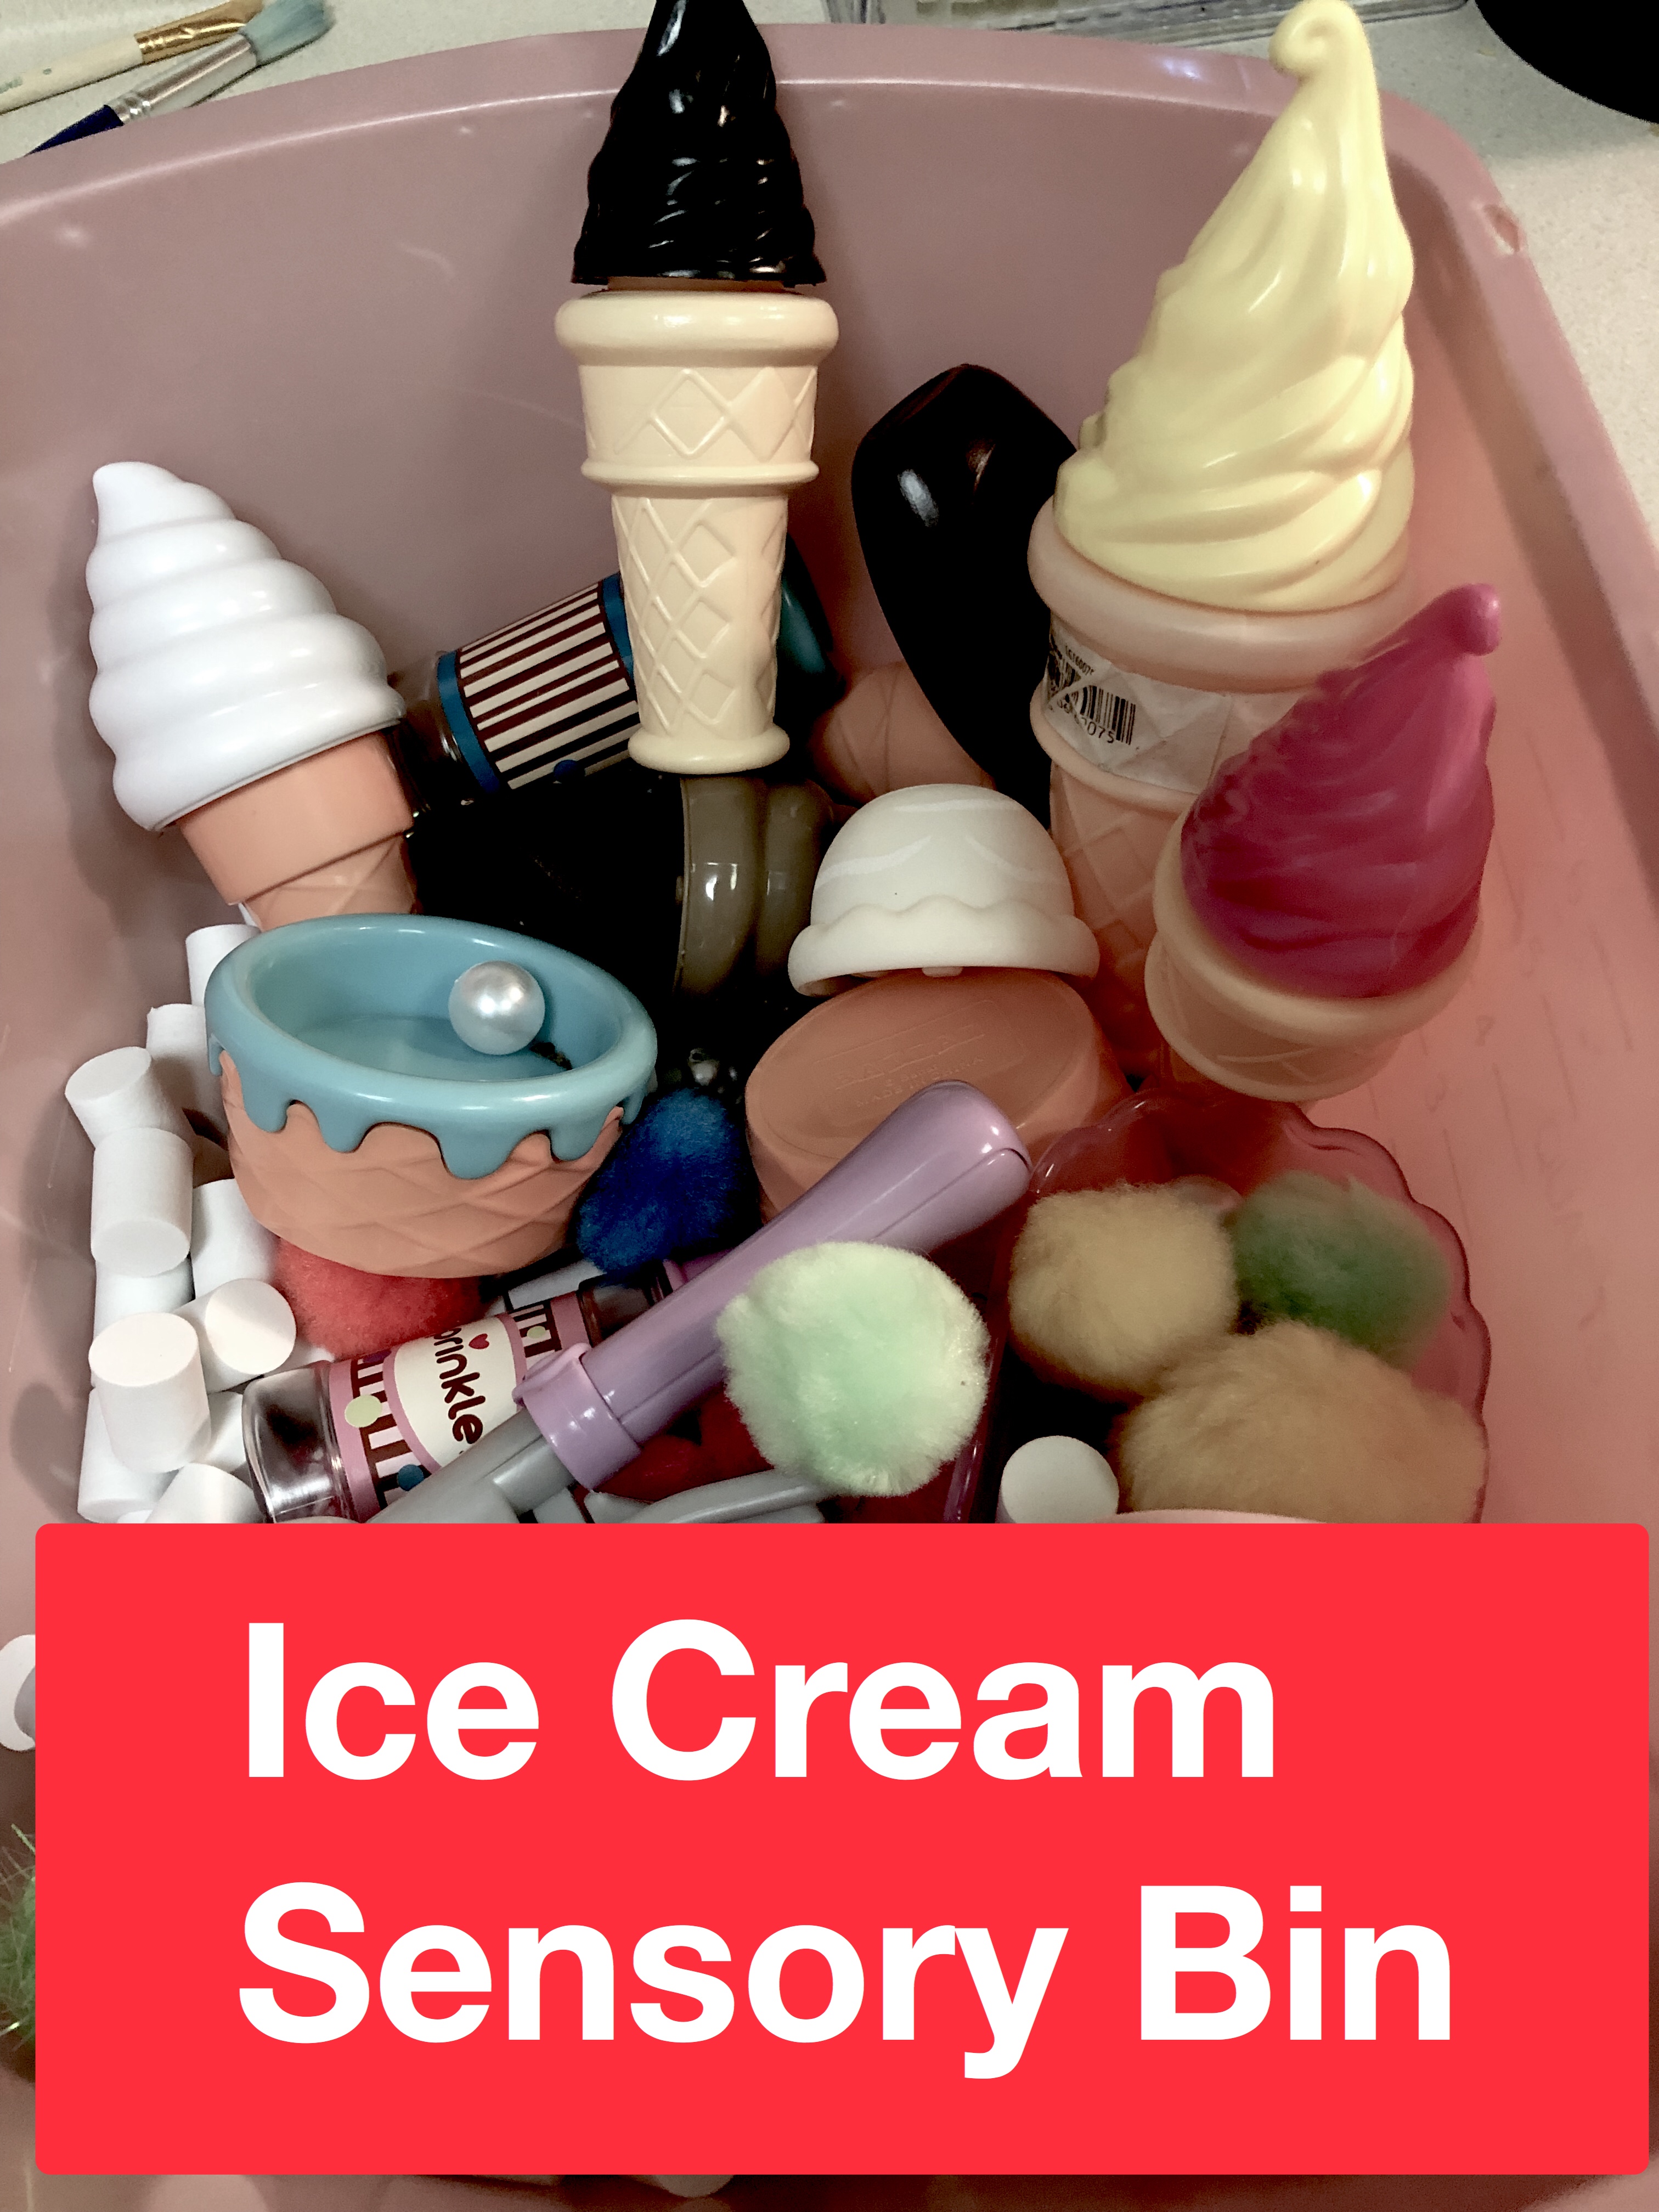 Ice cream sensory bin pin